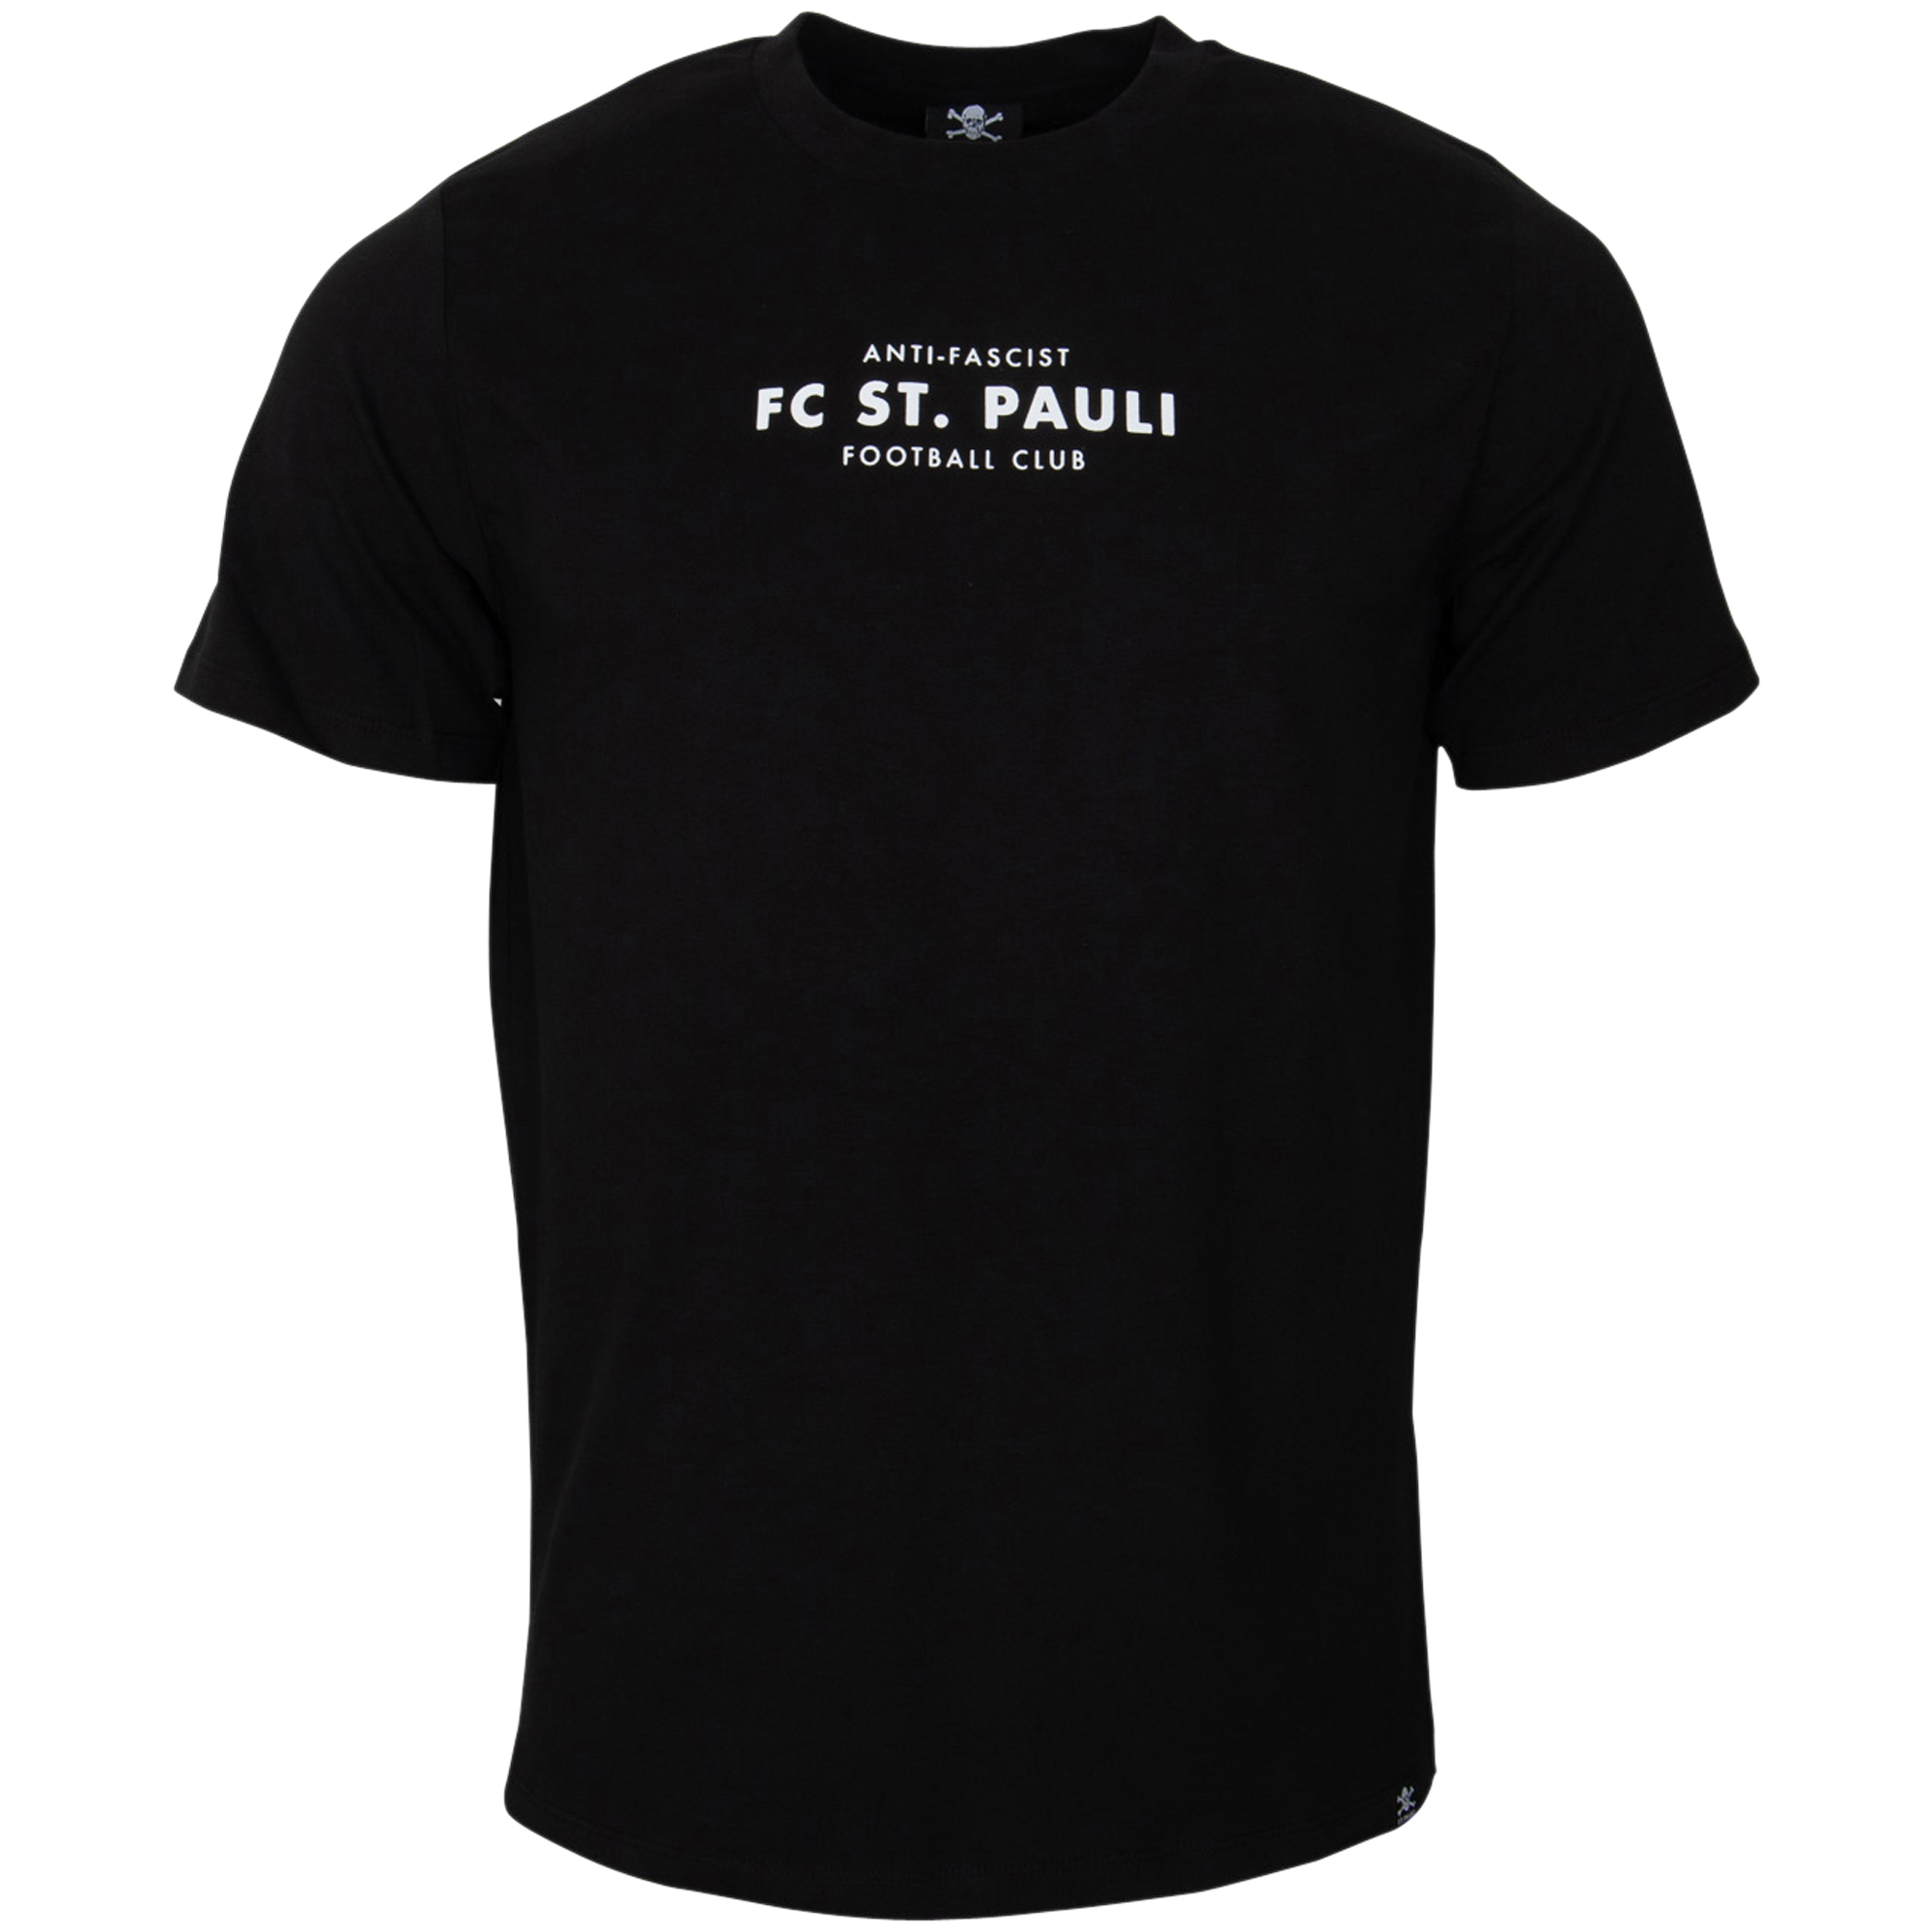 FC St. Pauli - T-Shirt Anti-Fascist Totenkopf - schwarz